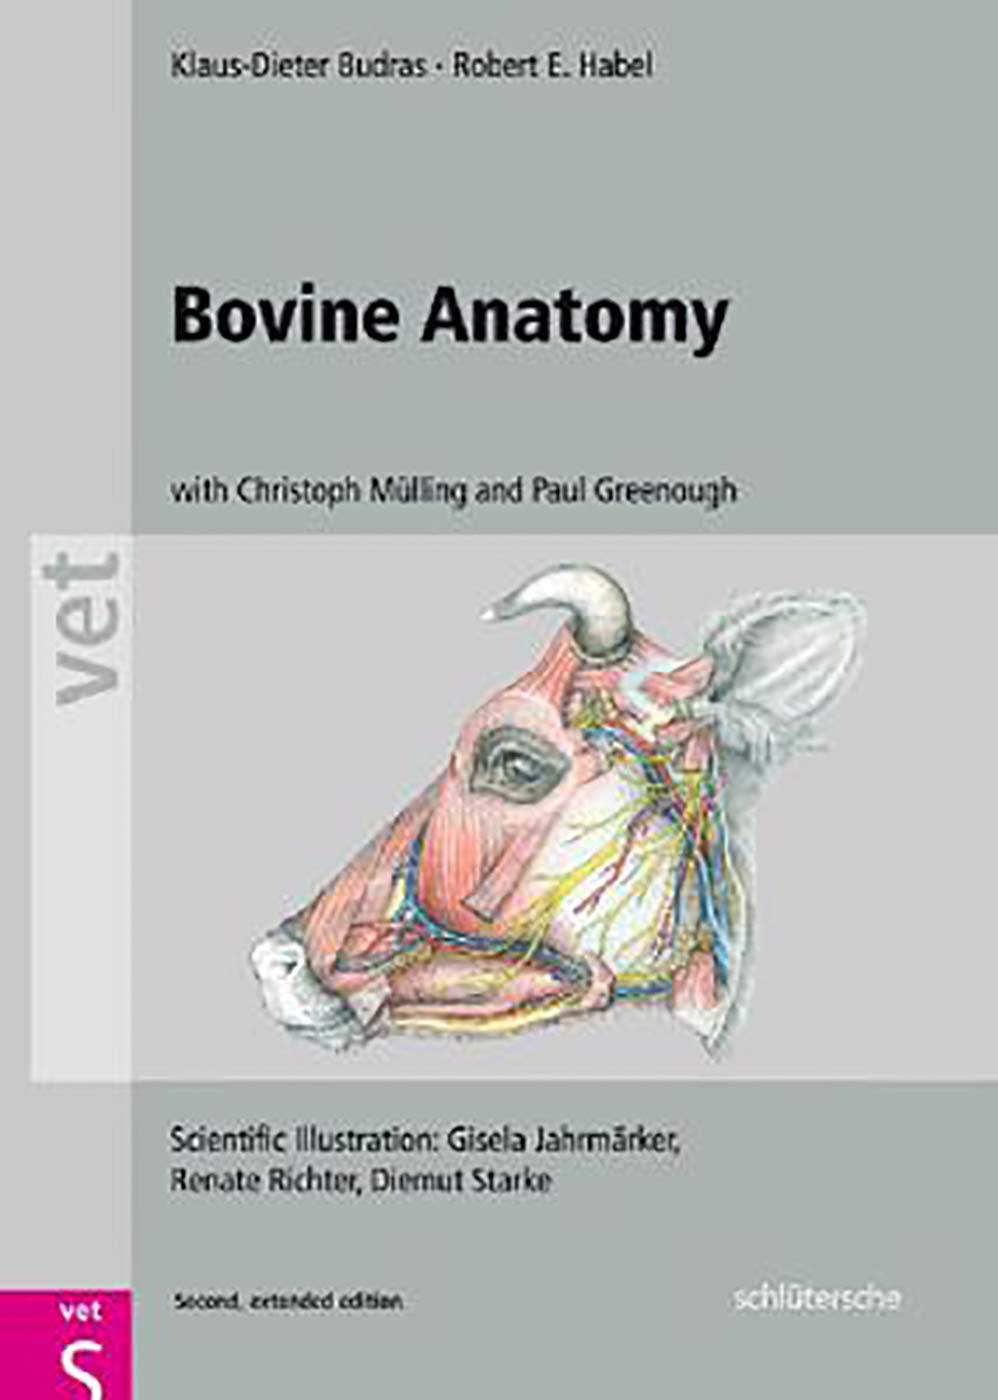 Anatomy Books